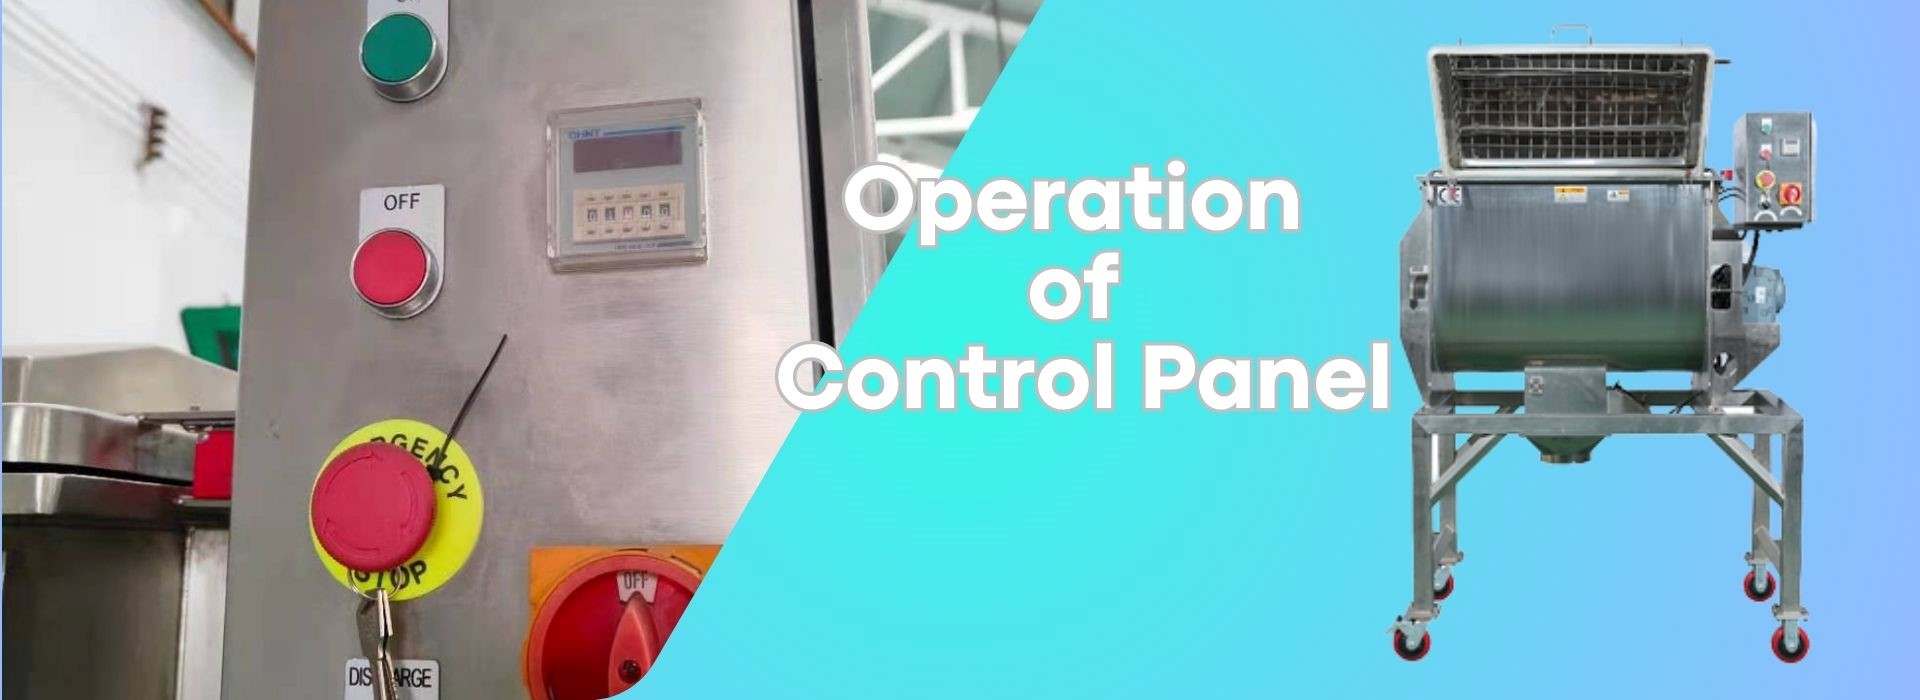 Paano natin dapat patakbuhin ang Control Panel1